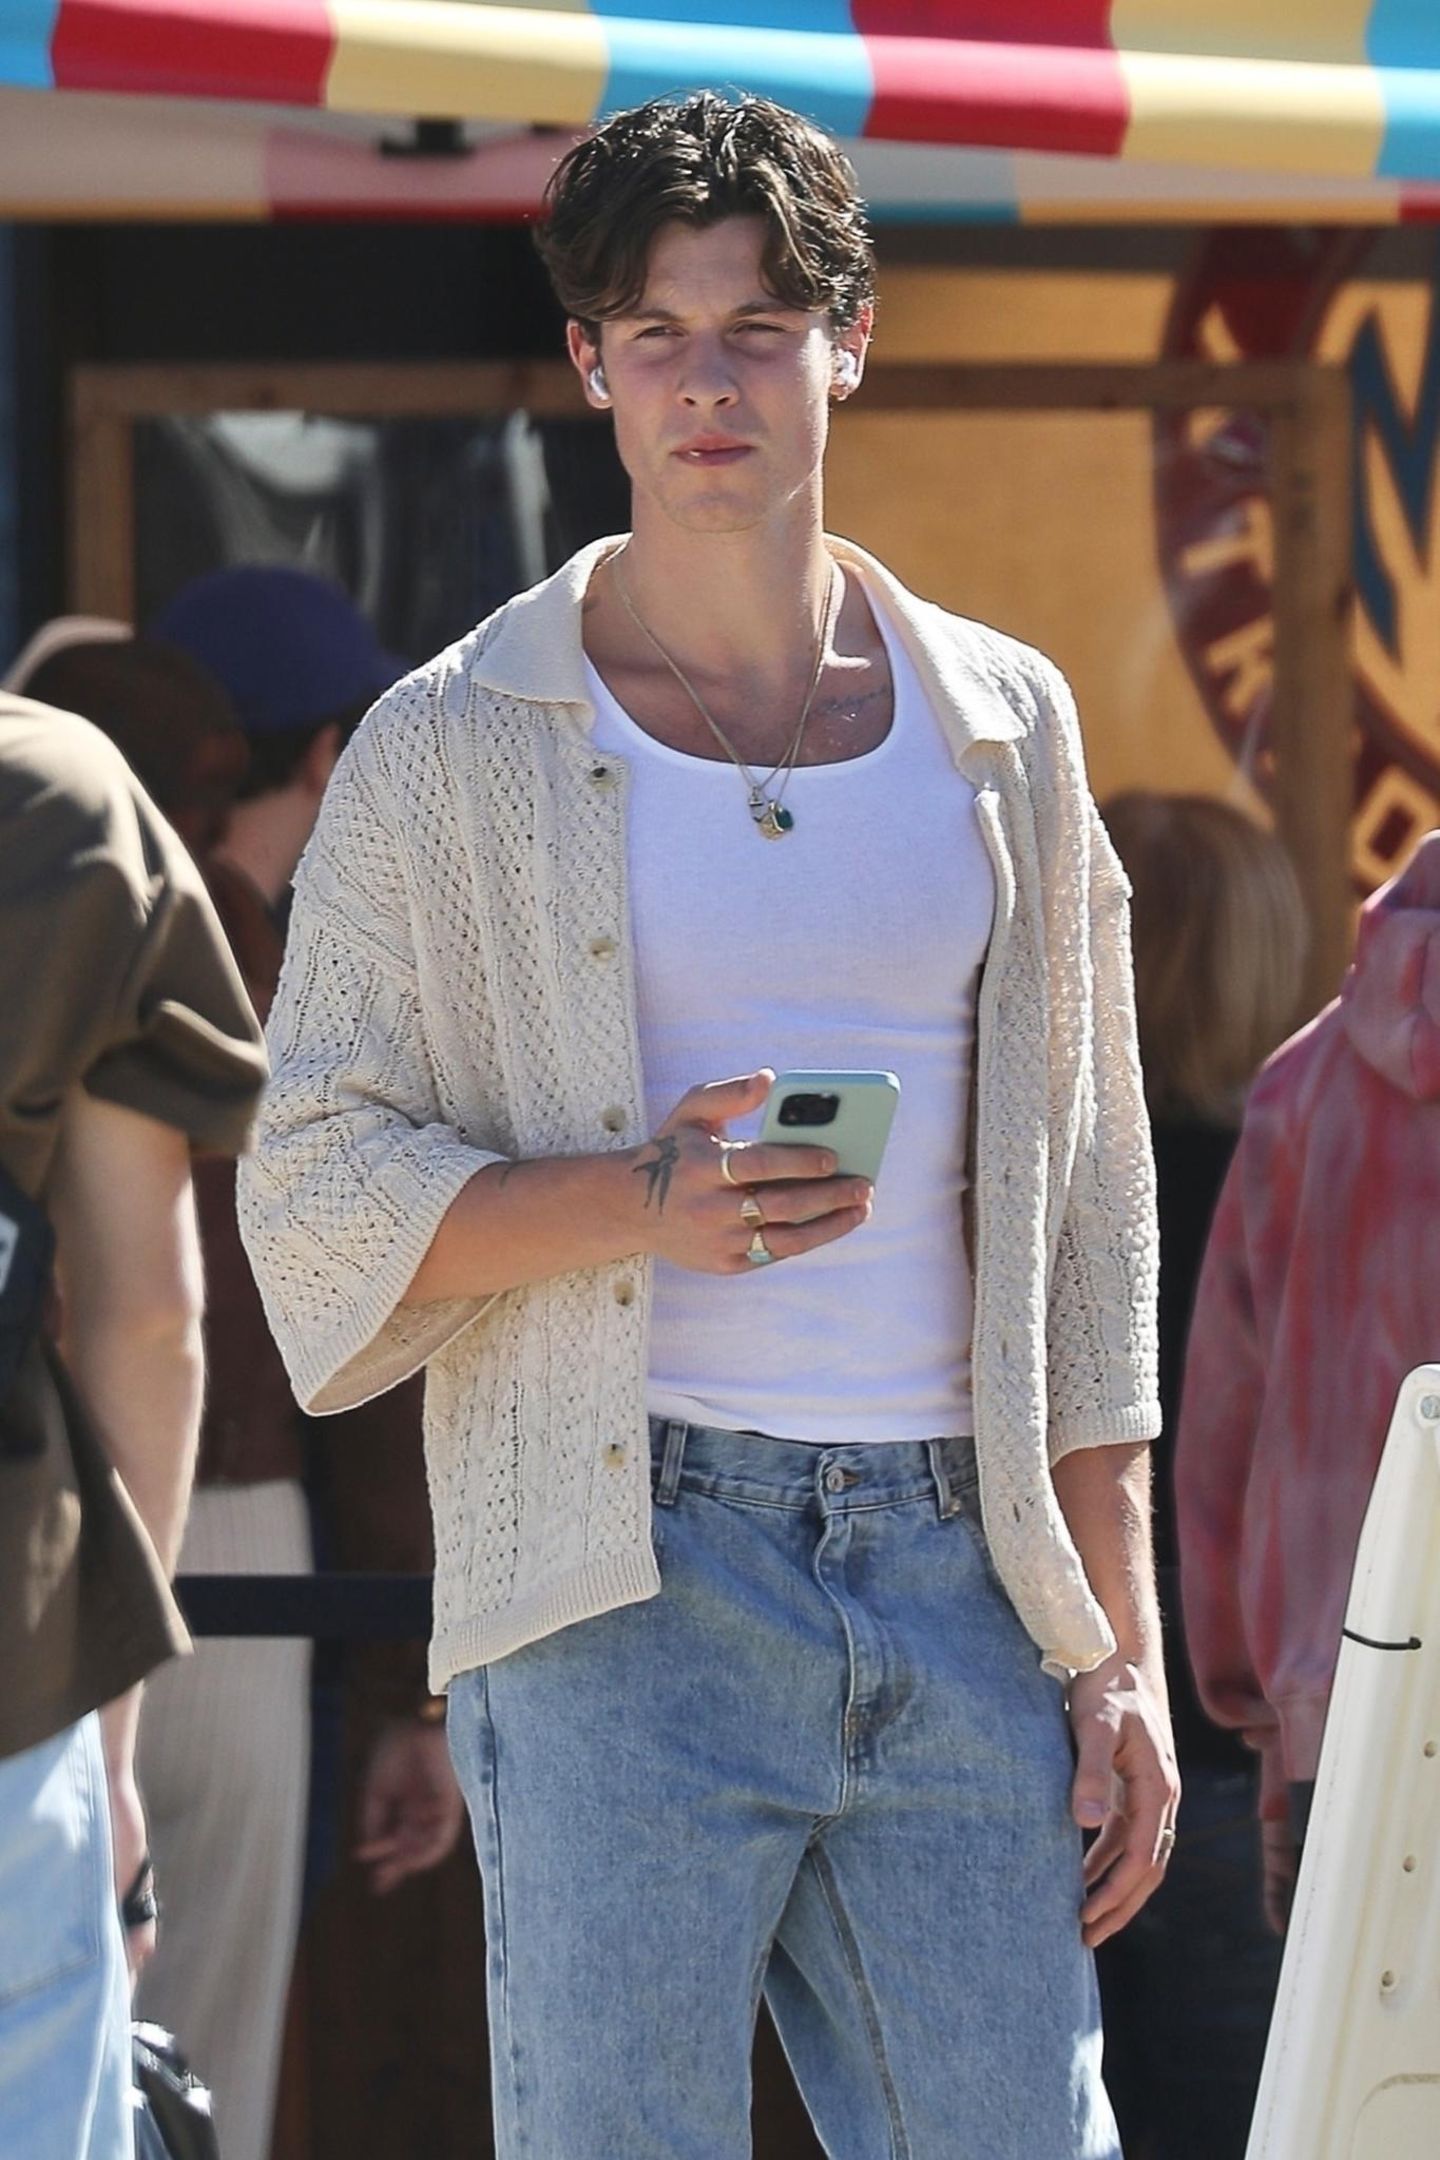 Die schönen braunen Haare von Shawn Mendes sind sein Markenzeichen. Seit Jahren trägt der Sänger seine offene Mähne in einem lässigen Look. Für 2023 hat sich der 24-Jährige aber anscheinend für eine neue Frisur entschieden...